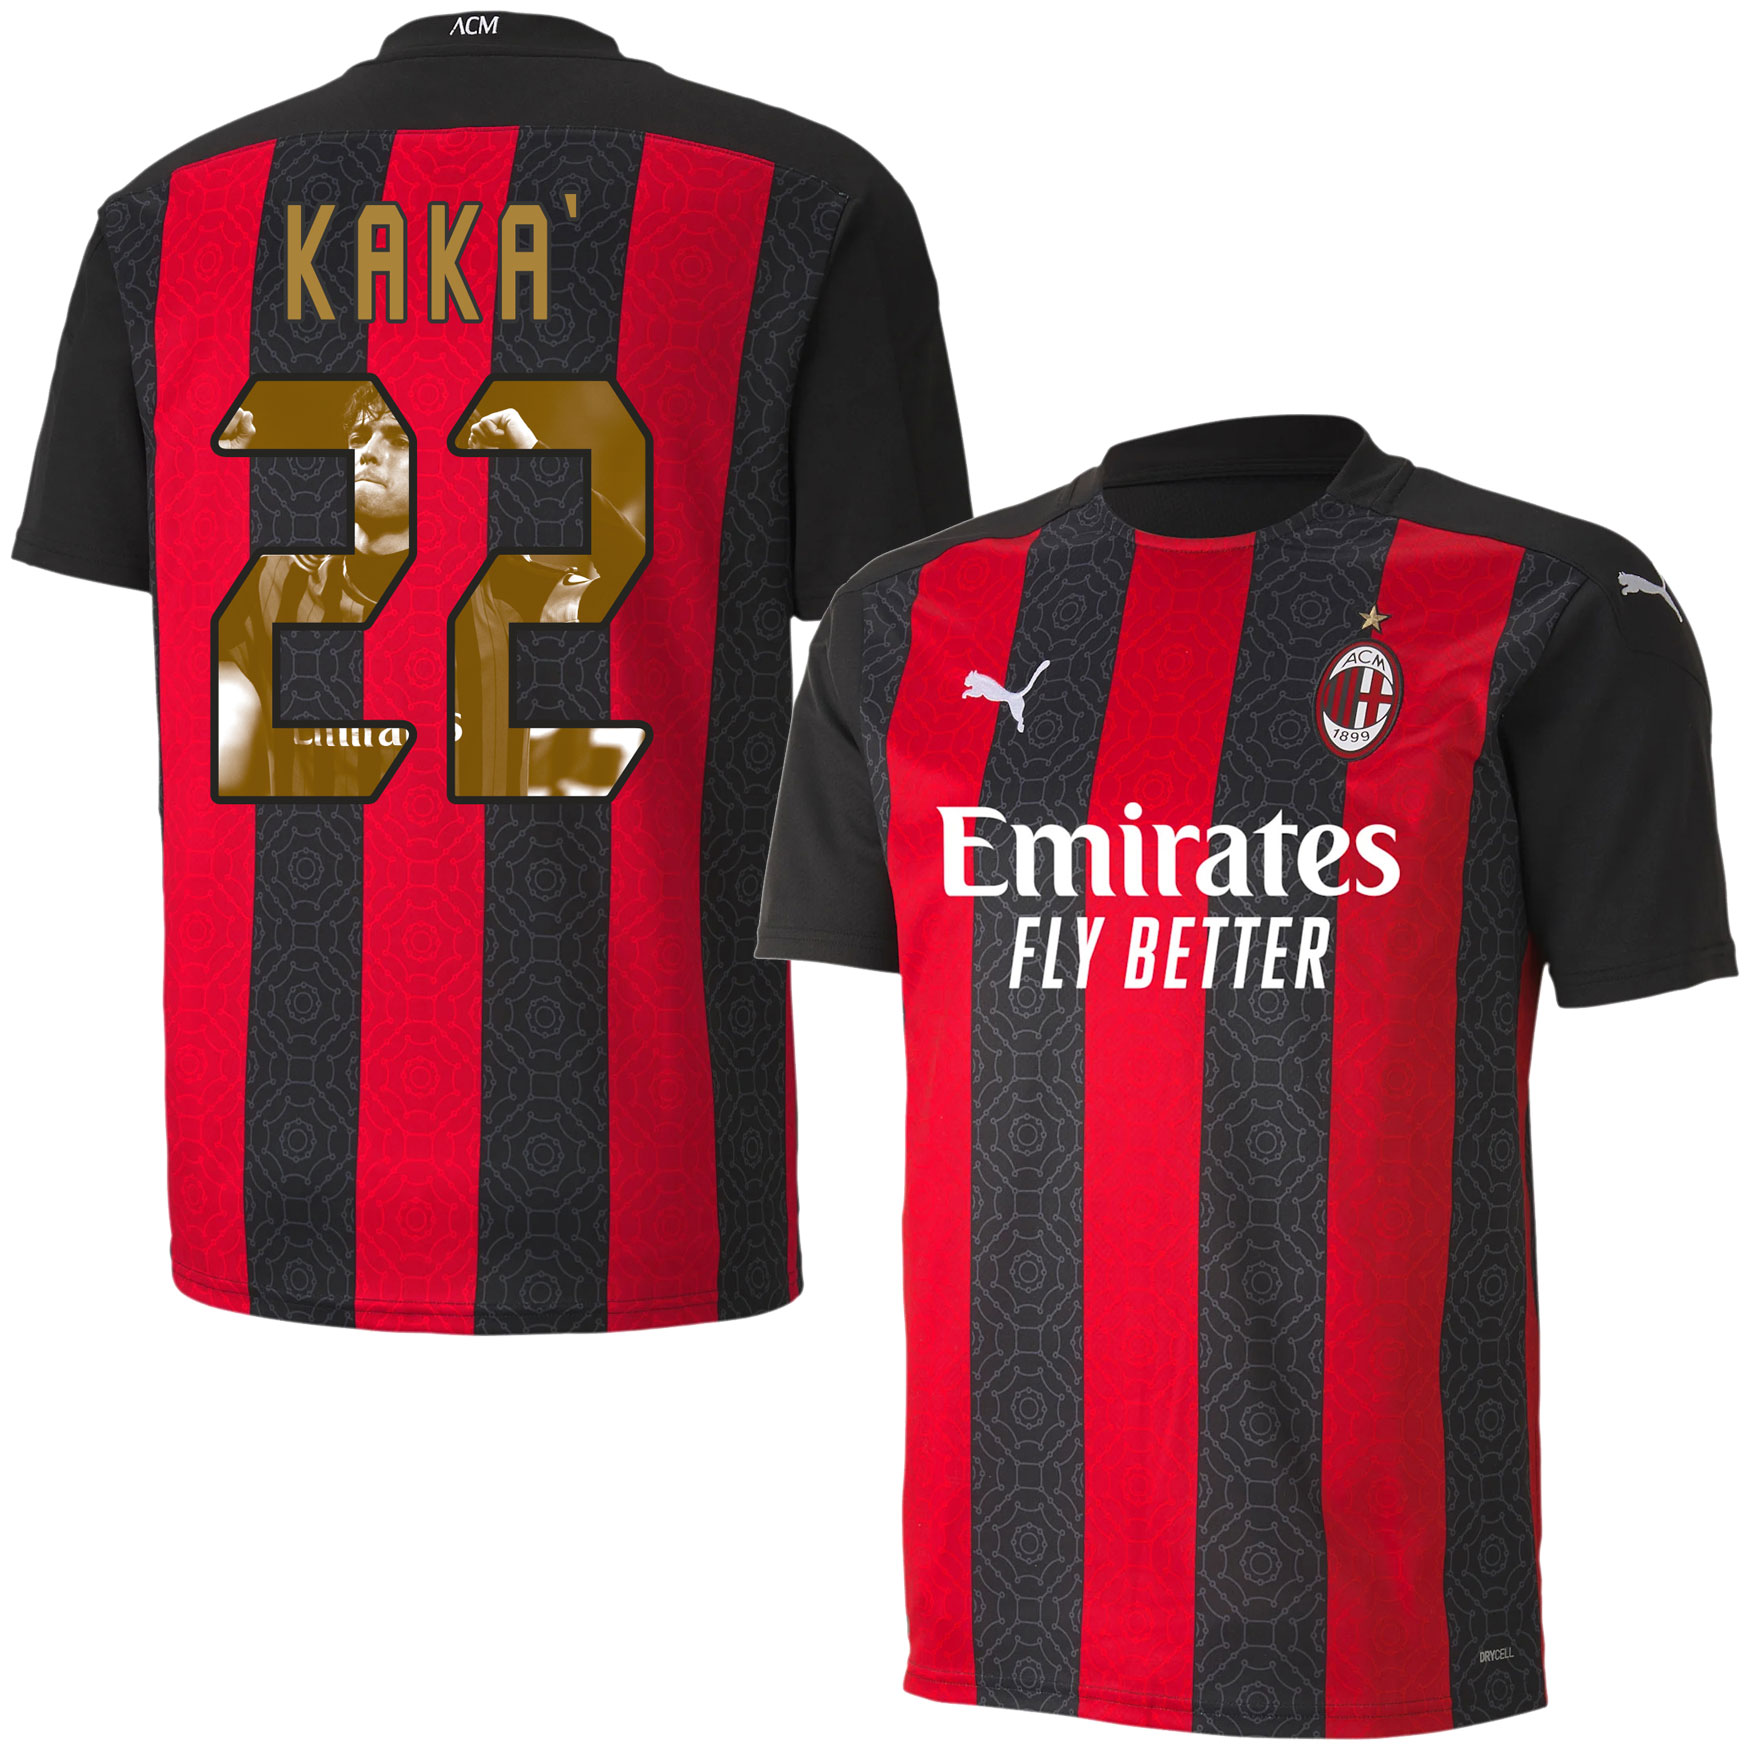 AC Milan Shirt Thuis 2020-2021 + Kaka 22 (Gallery Style)